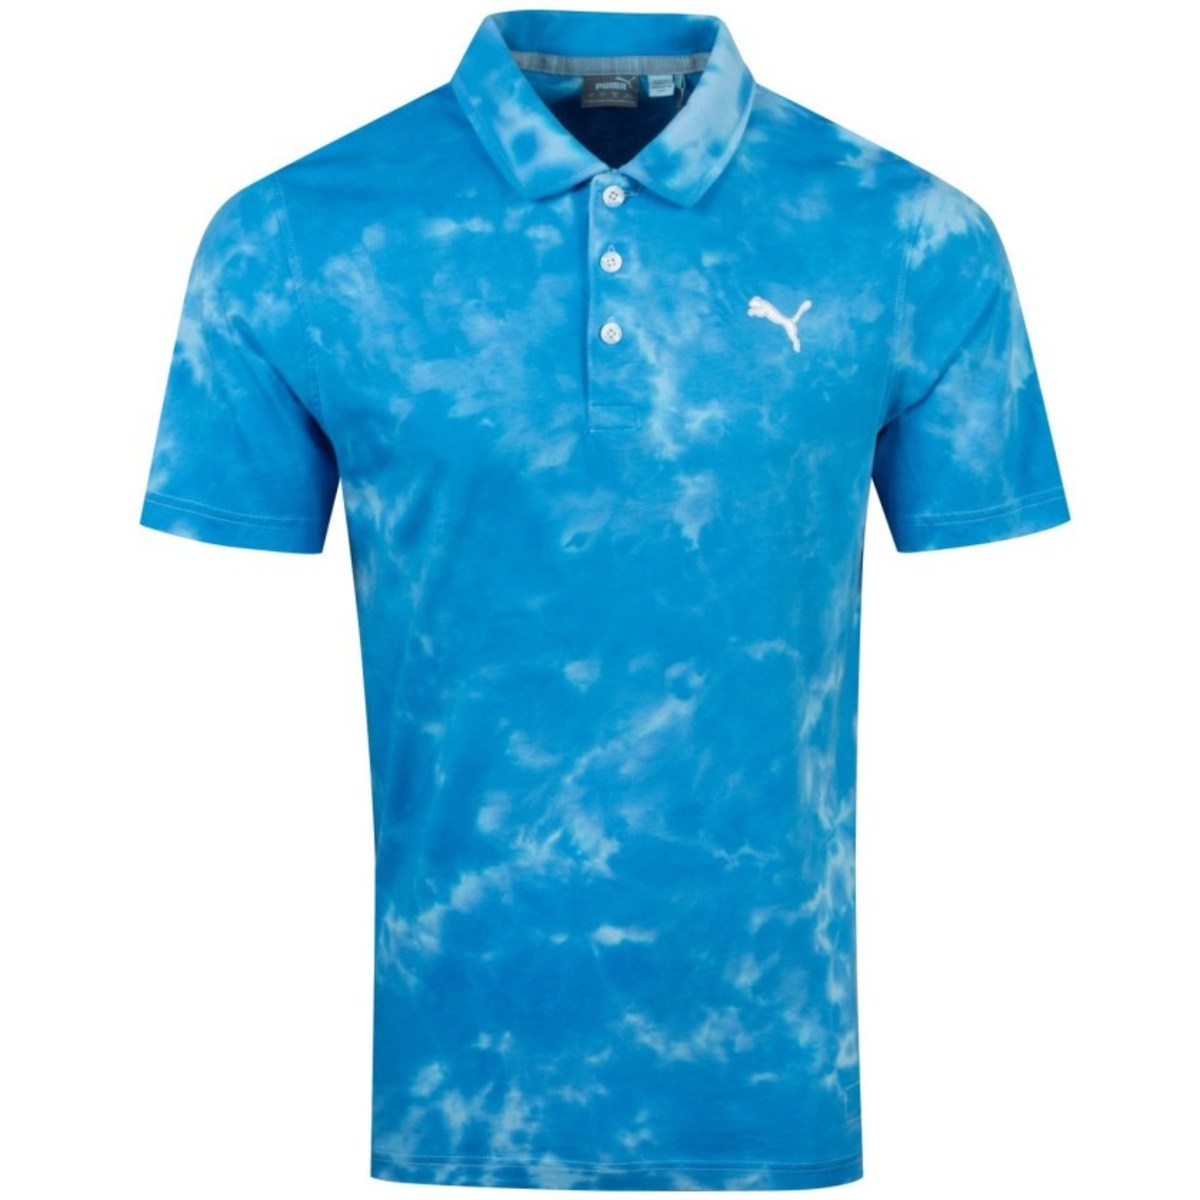 Puma Golf's Haight polo shirt in ibiza blue.